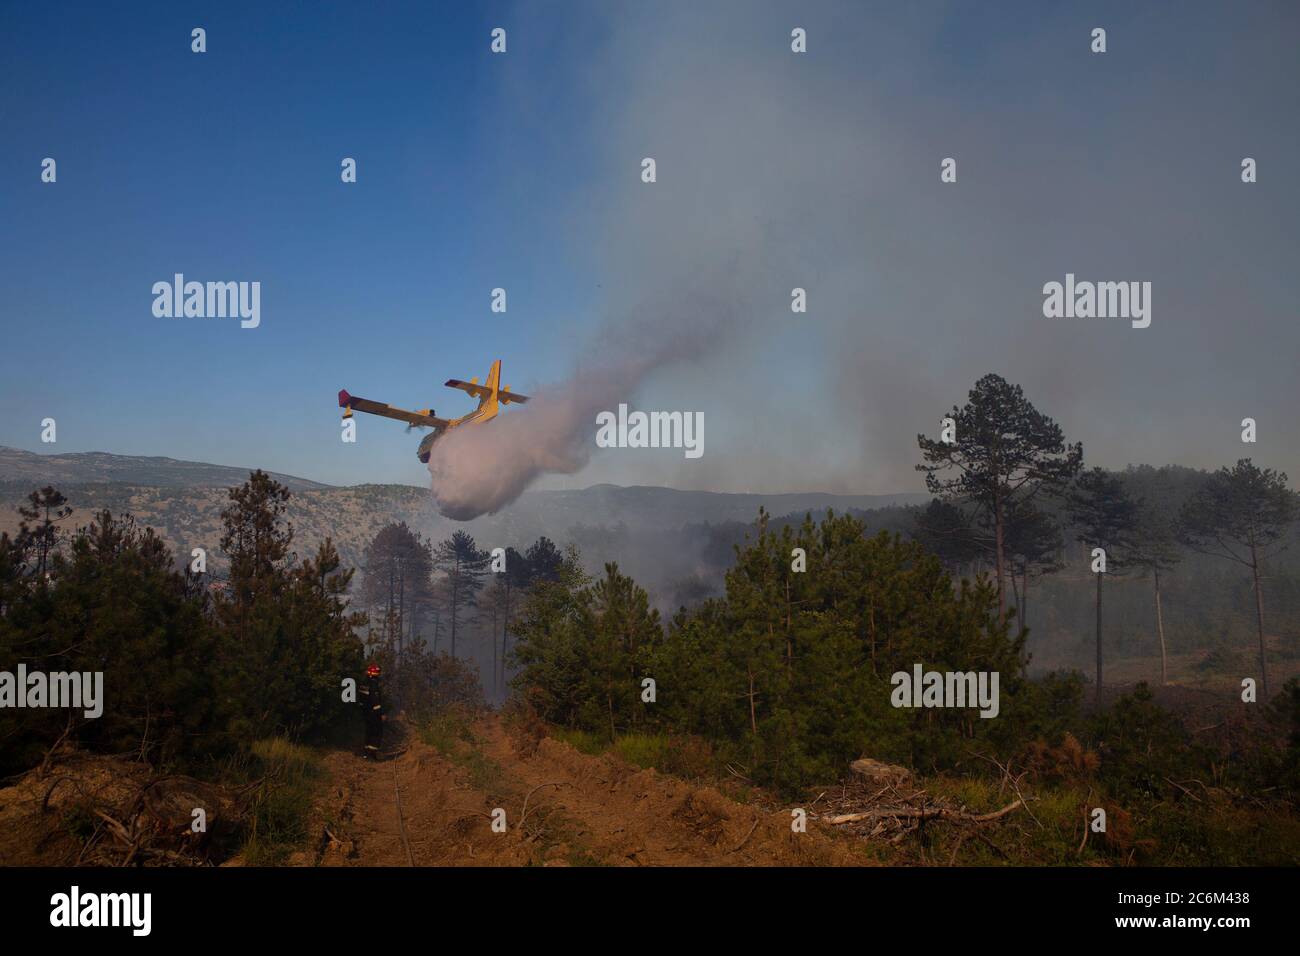 (200711) -- RAMLJANI, 11 de julio de 2020 (Xinhua) -- UN avión vierte agua en fuego durante un esfuerzo por apagar un incendio forestal cerca de la aldea de Ramljani en el condado central de Lika-Senj, en Croacia, el 10 de julio de 2020. El incendio comenzó en la región montañosa el jueves. (Frano Jerkan/Pixsell via Xinhua) Foto de stock